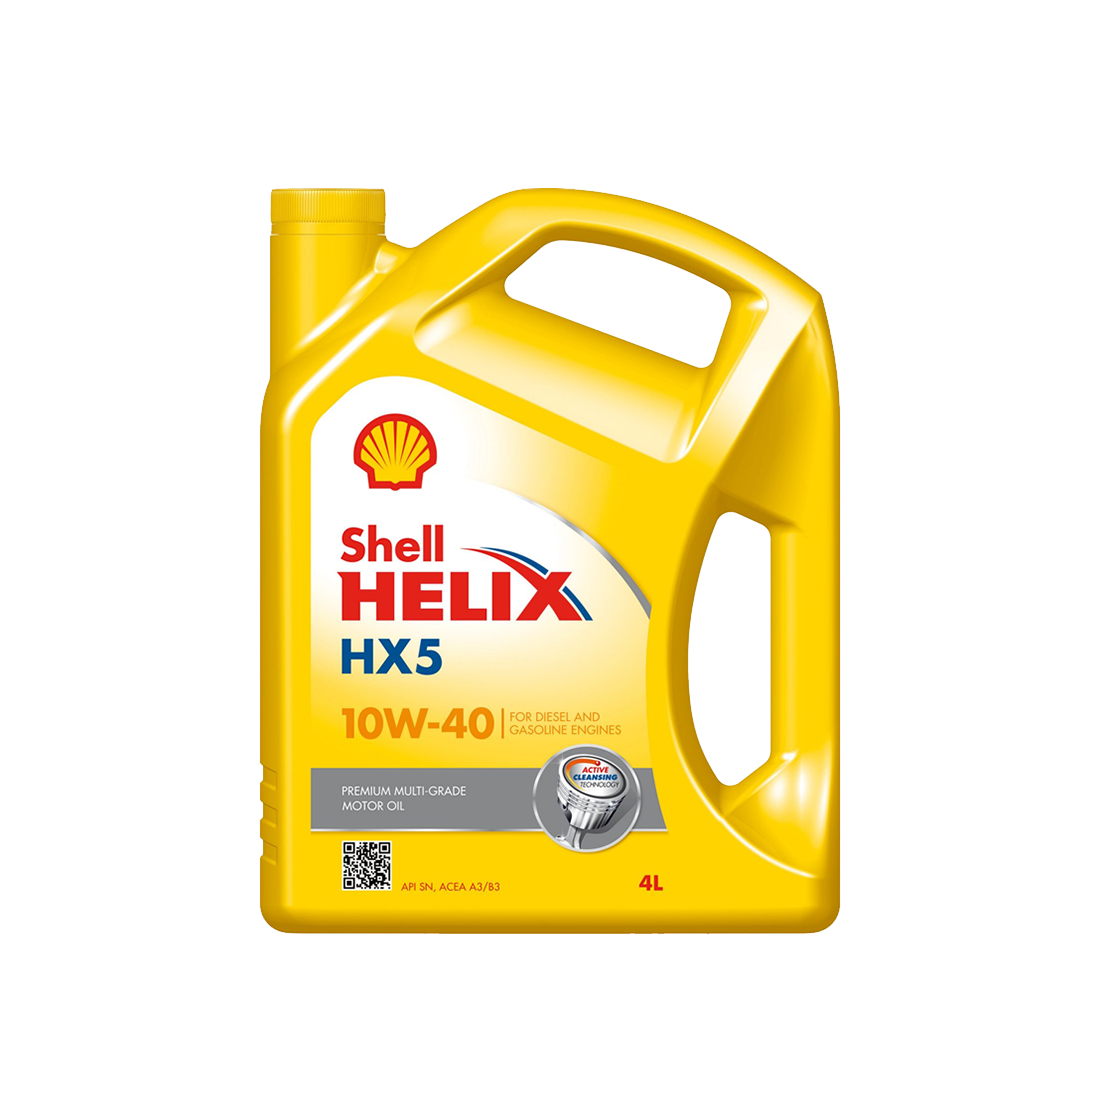 Mineralolja Shell Helix HX5 10W-40, 4L